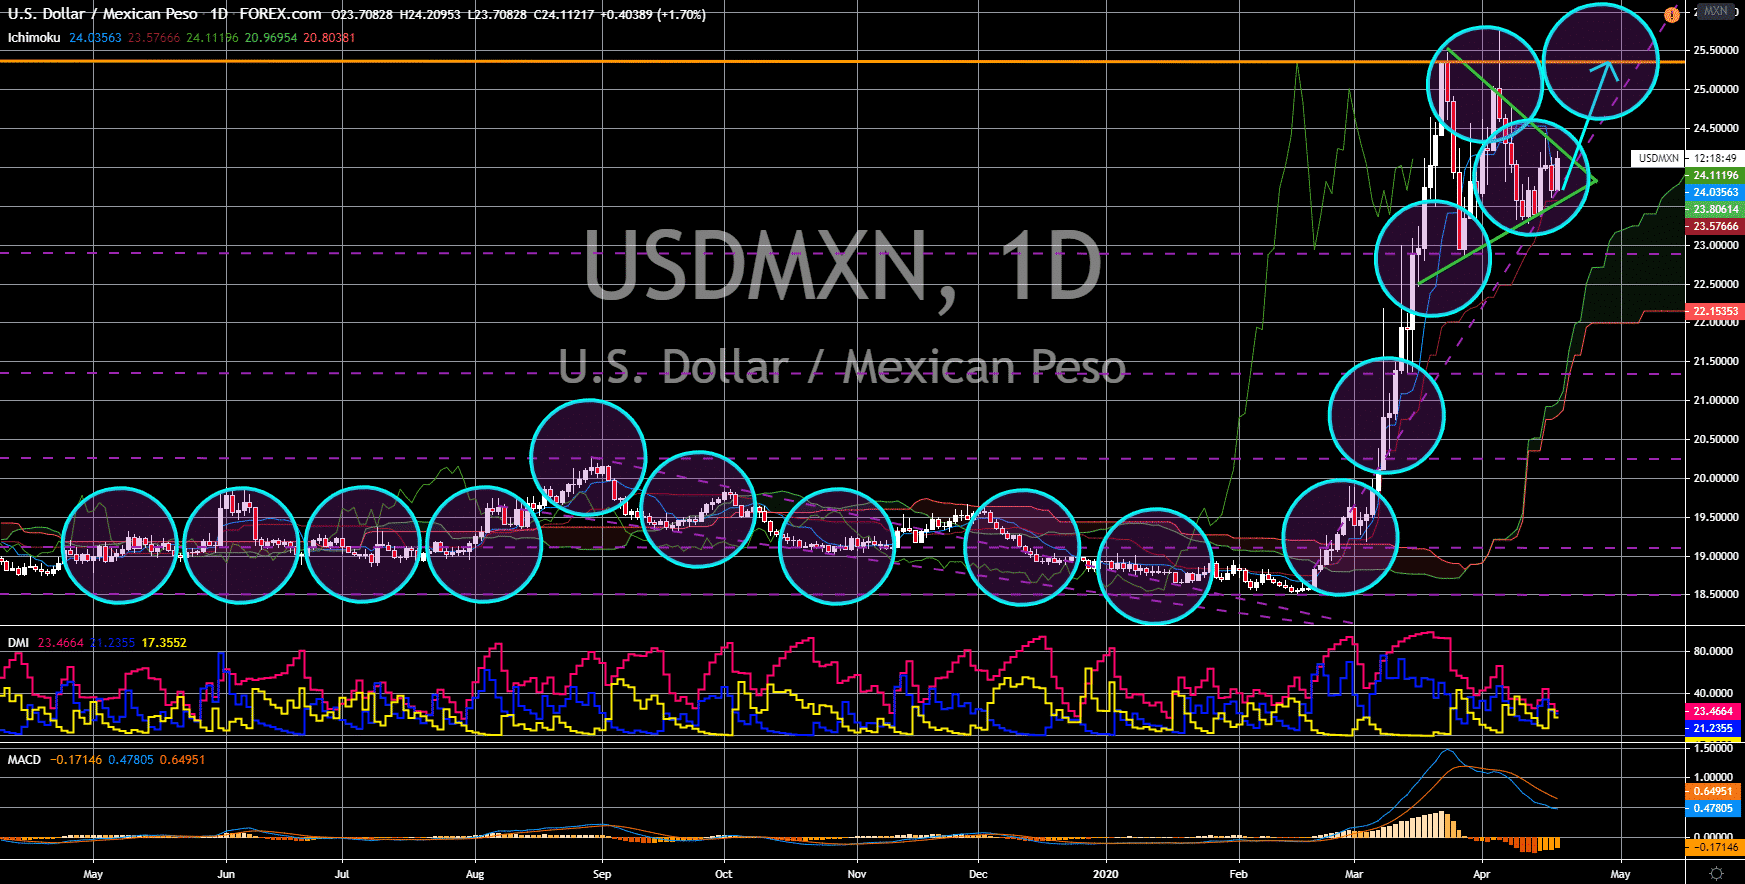 FinanceBrokerage - Noticias del mercado: Gráfico USD / MXN